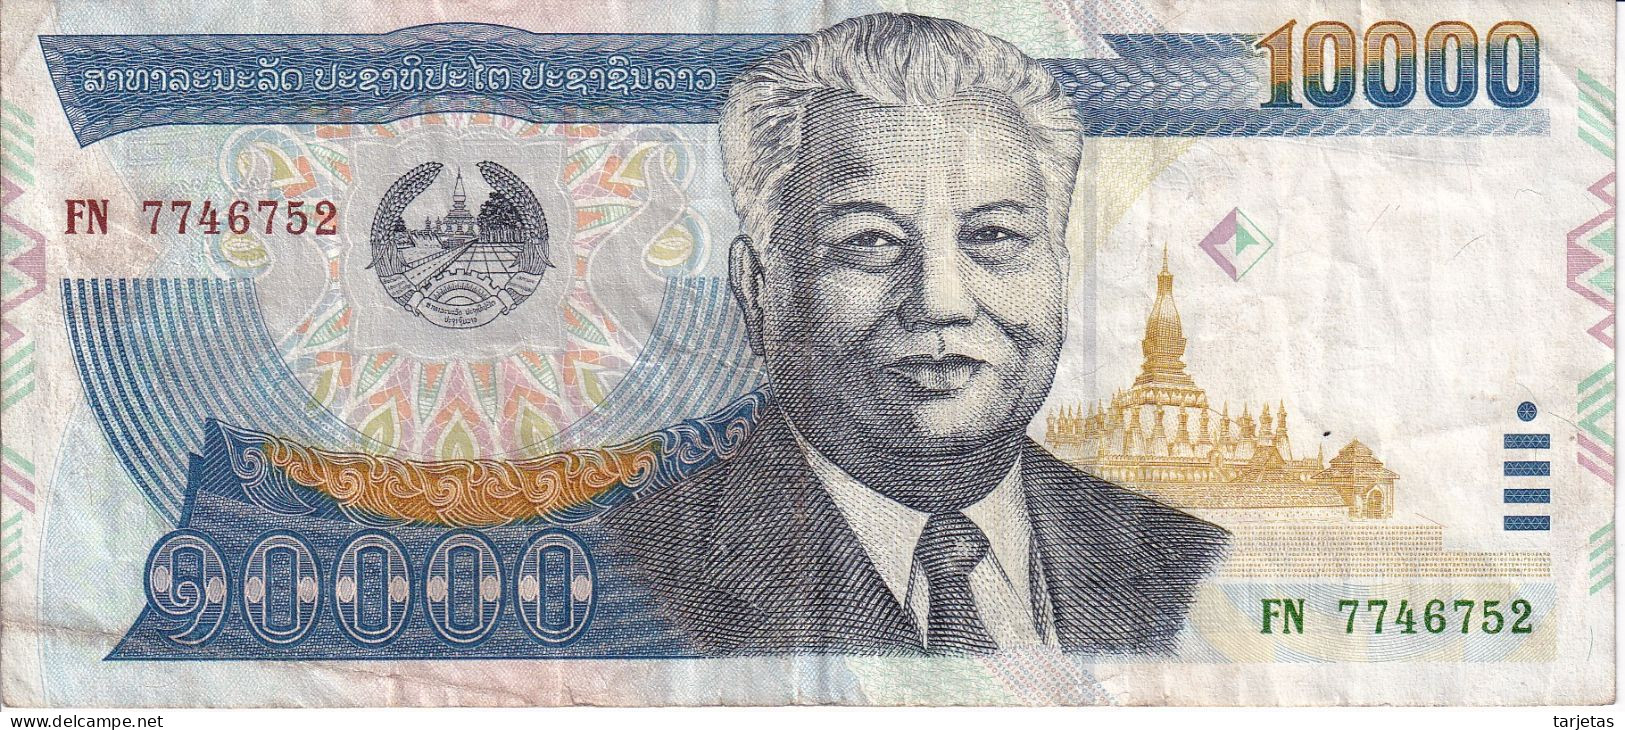 BILLETE DE LAOS DE 10000 KIP DEL AÑO 2003 (BANKNOTE) - Laos